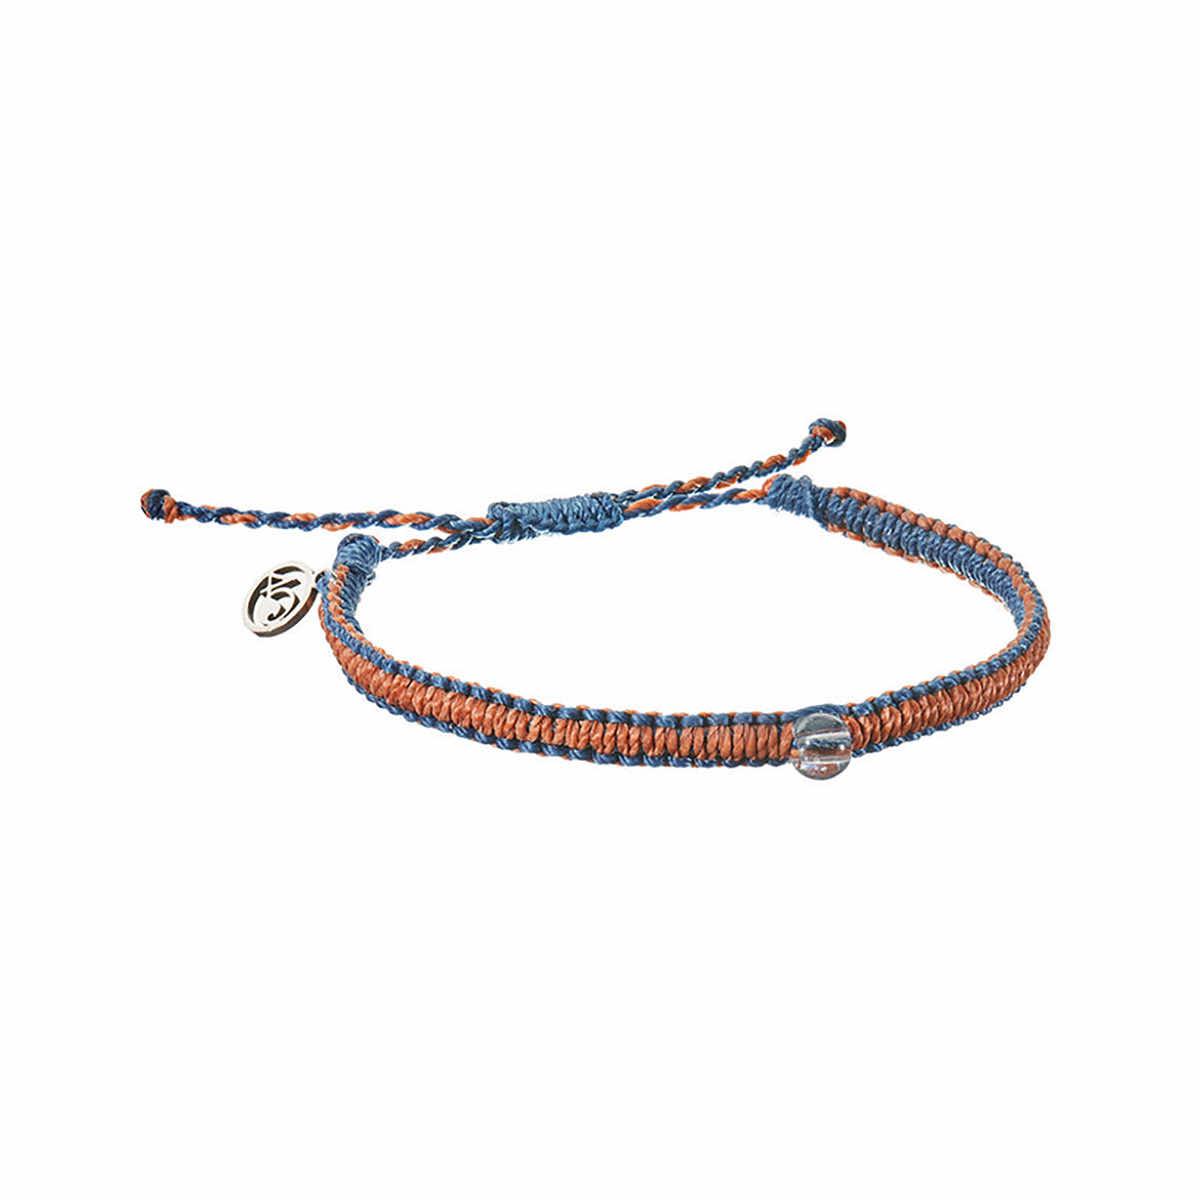  Luxe Seaside Braided Bracelet